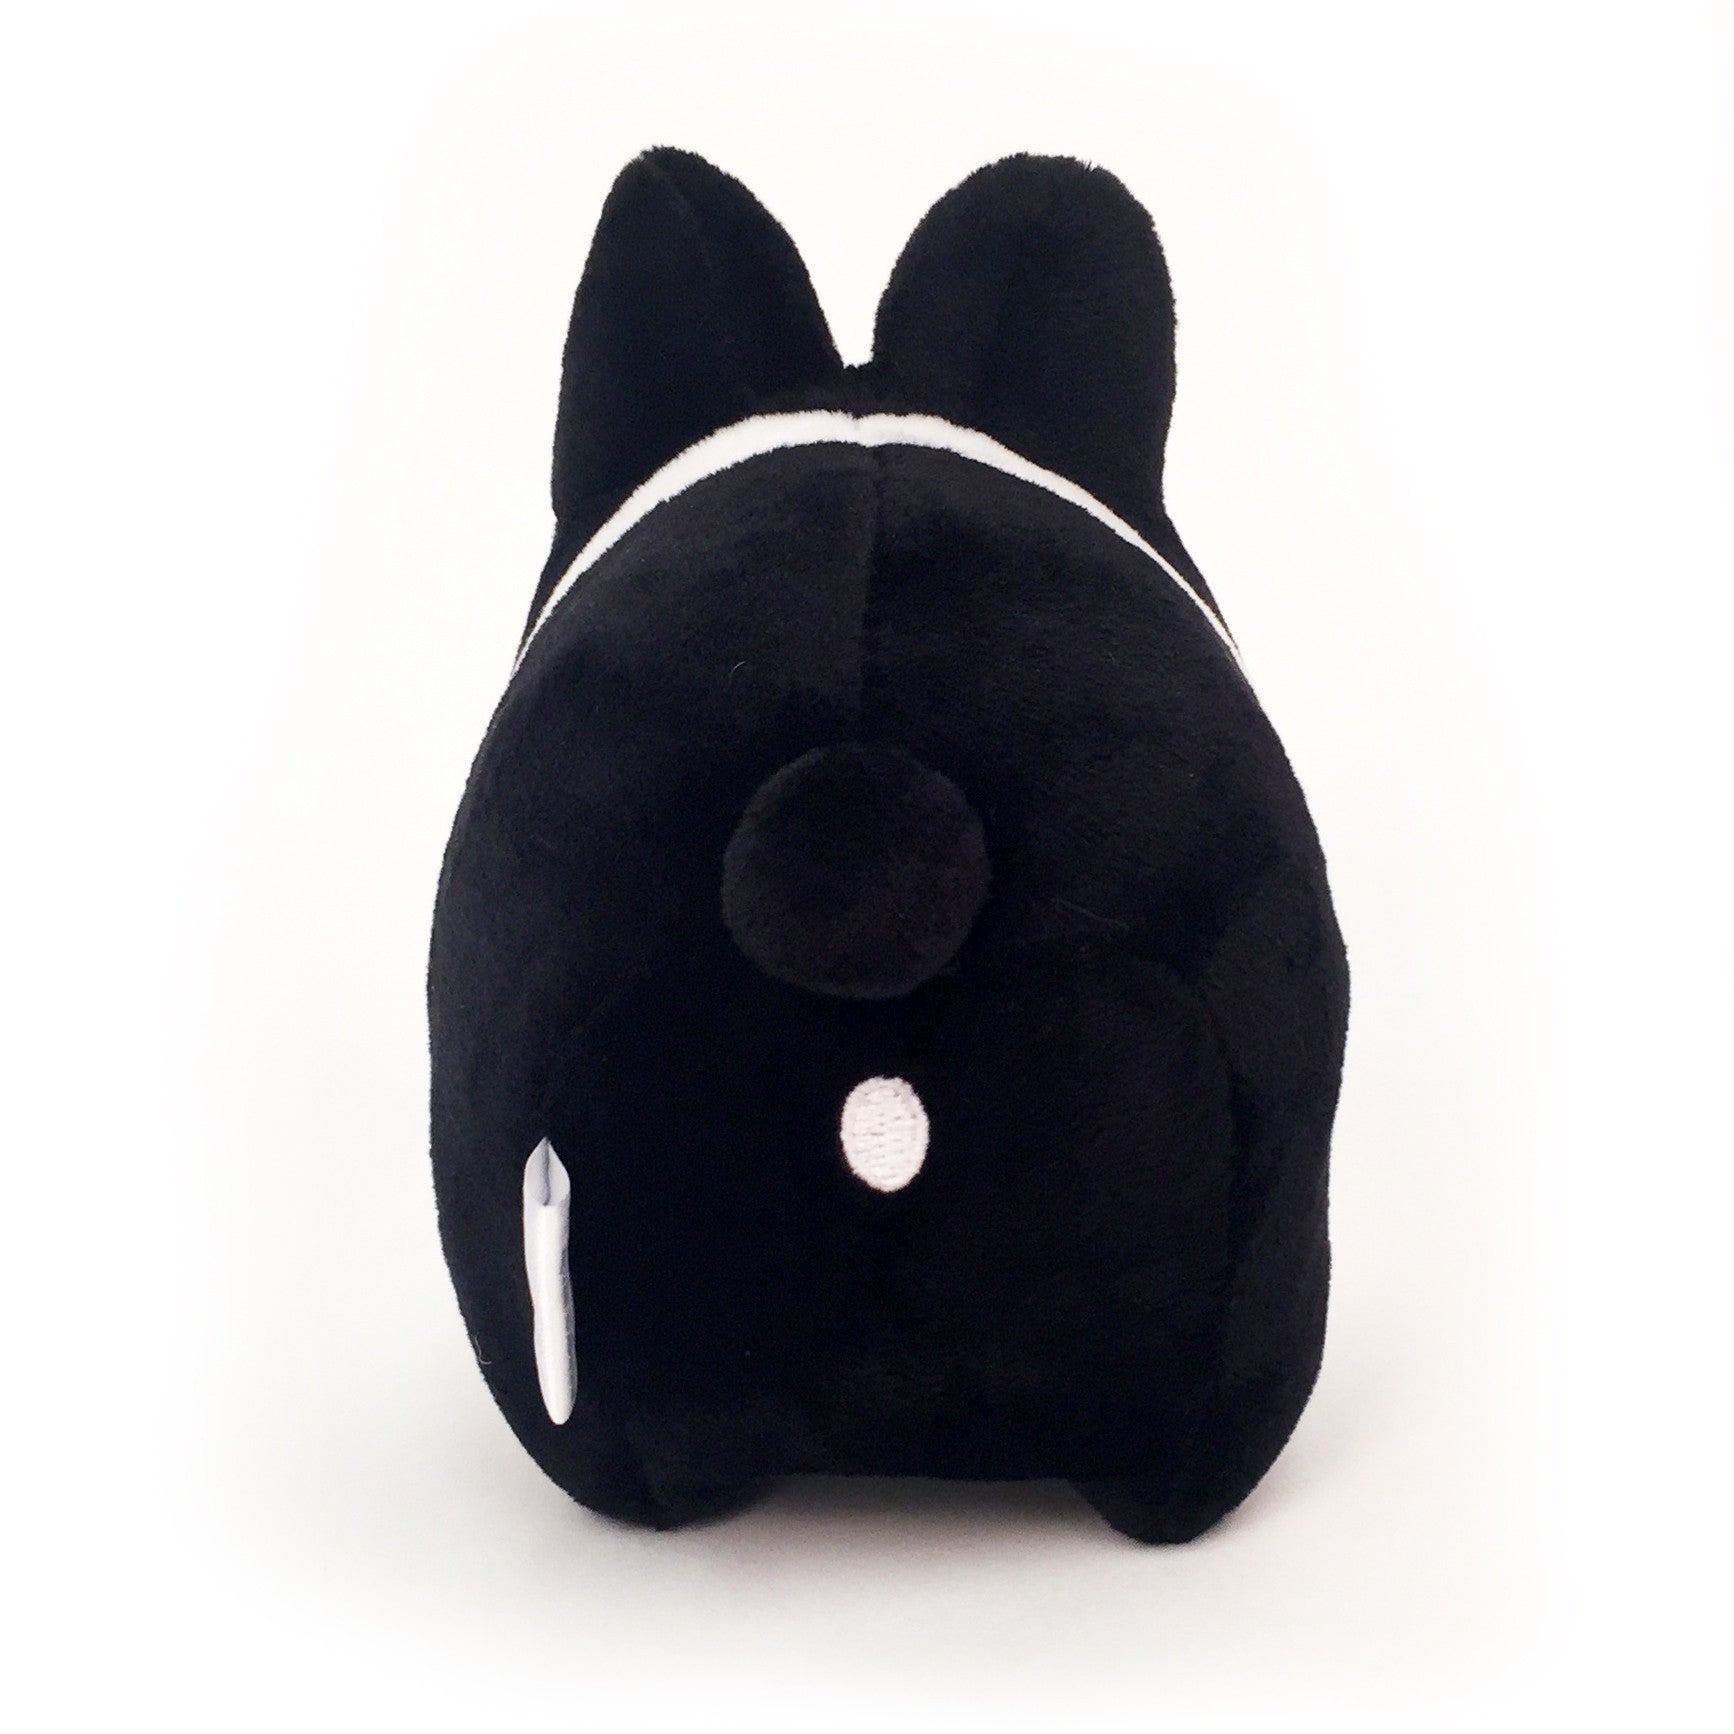 Black and White Litton 4.5” Small Plush Toy by Kidrobot - Mindzai
 - 1